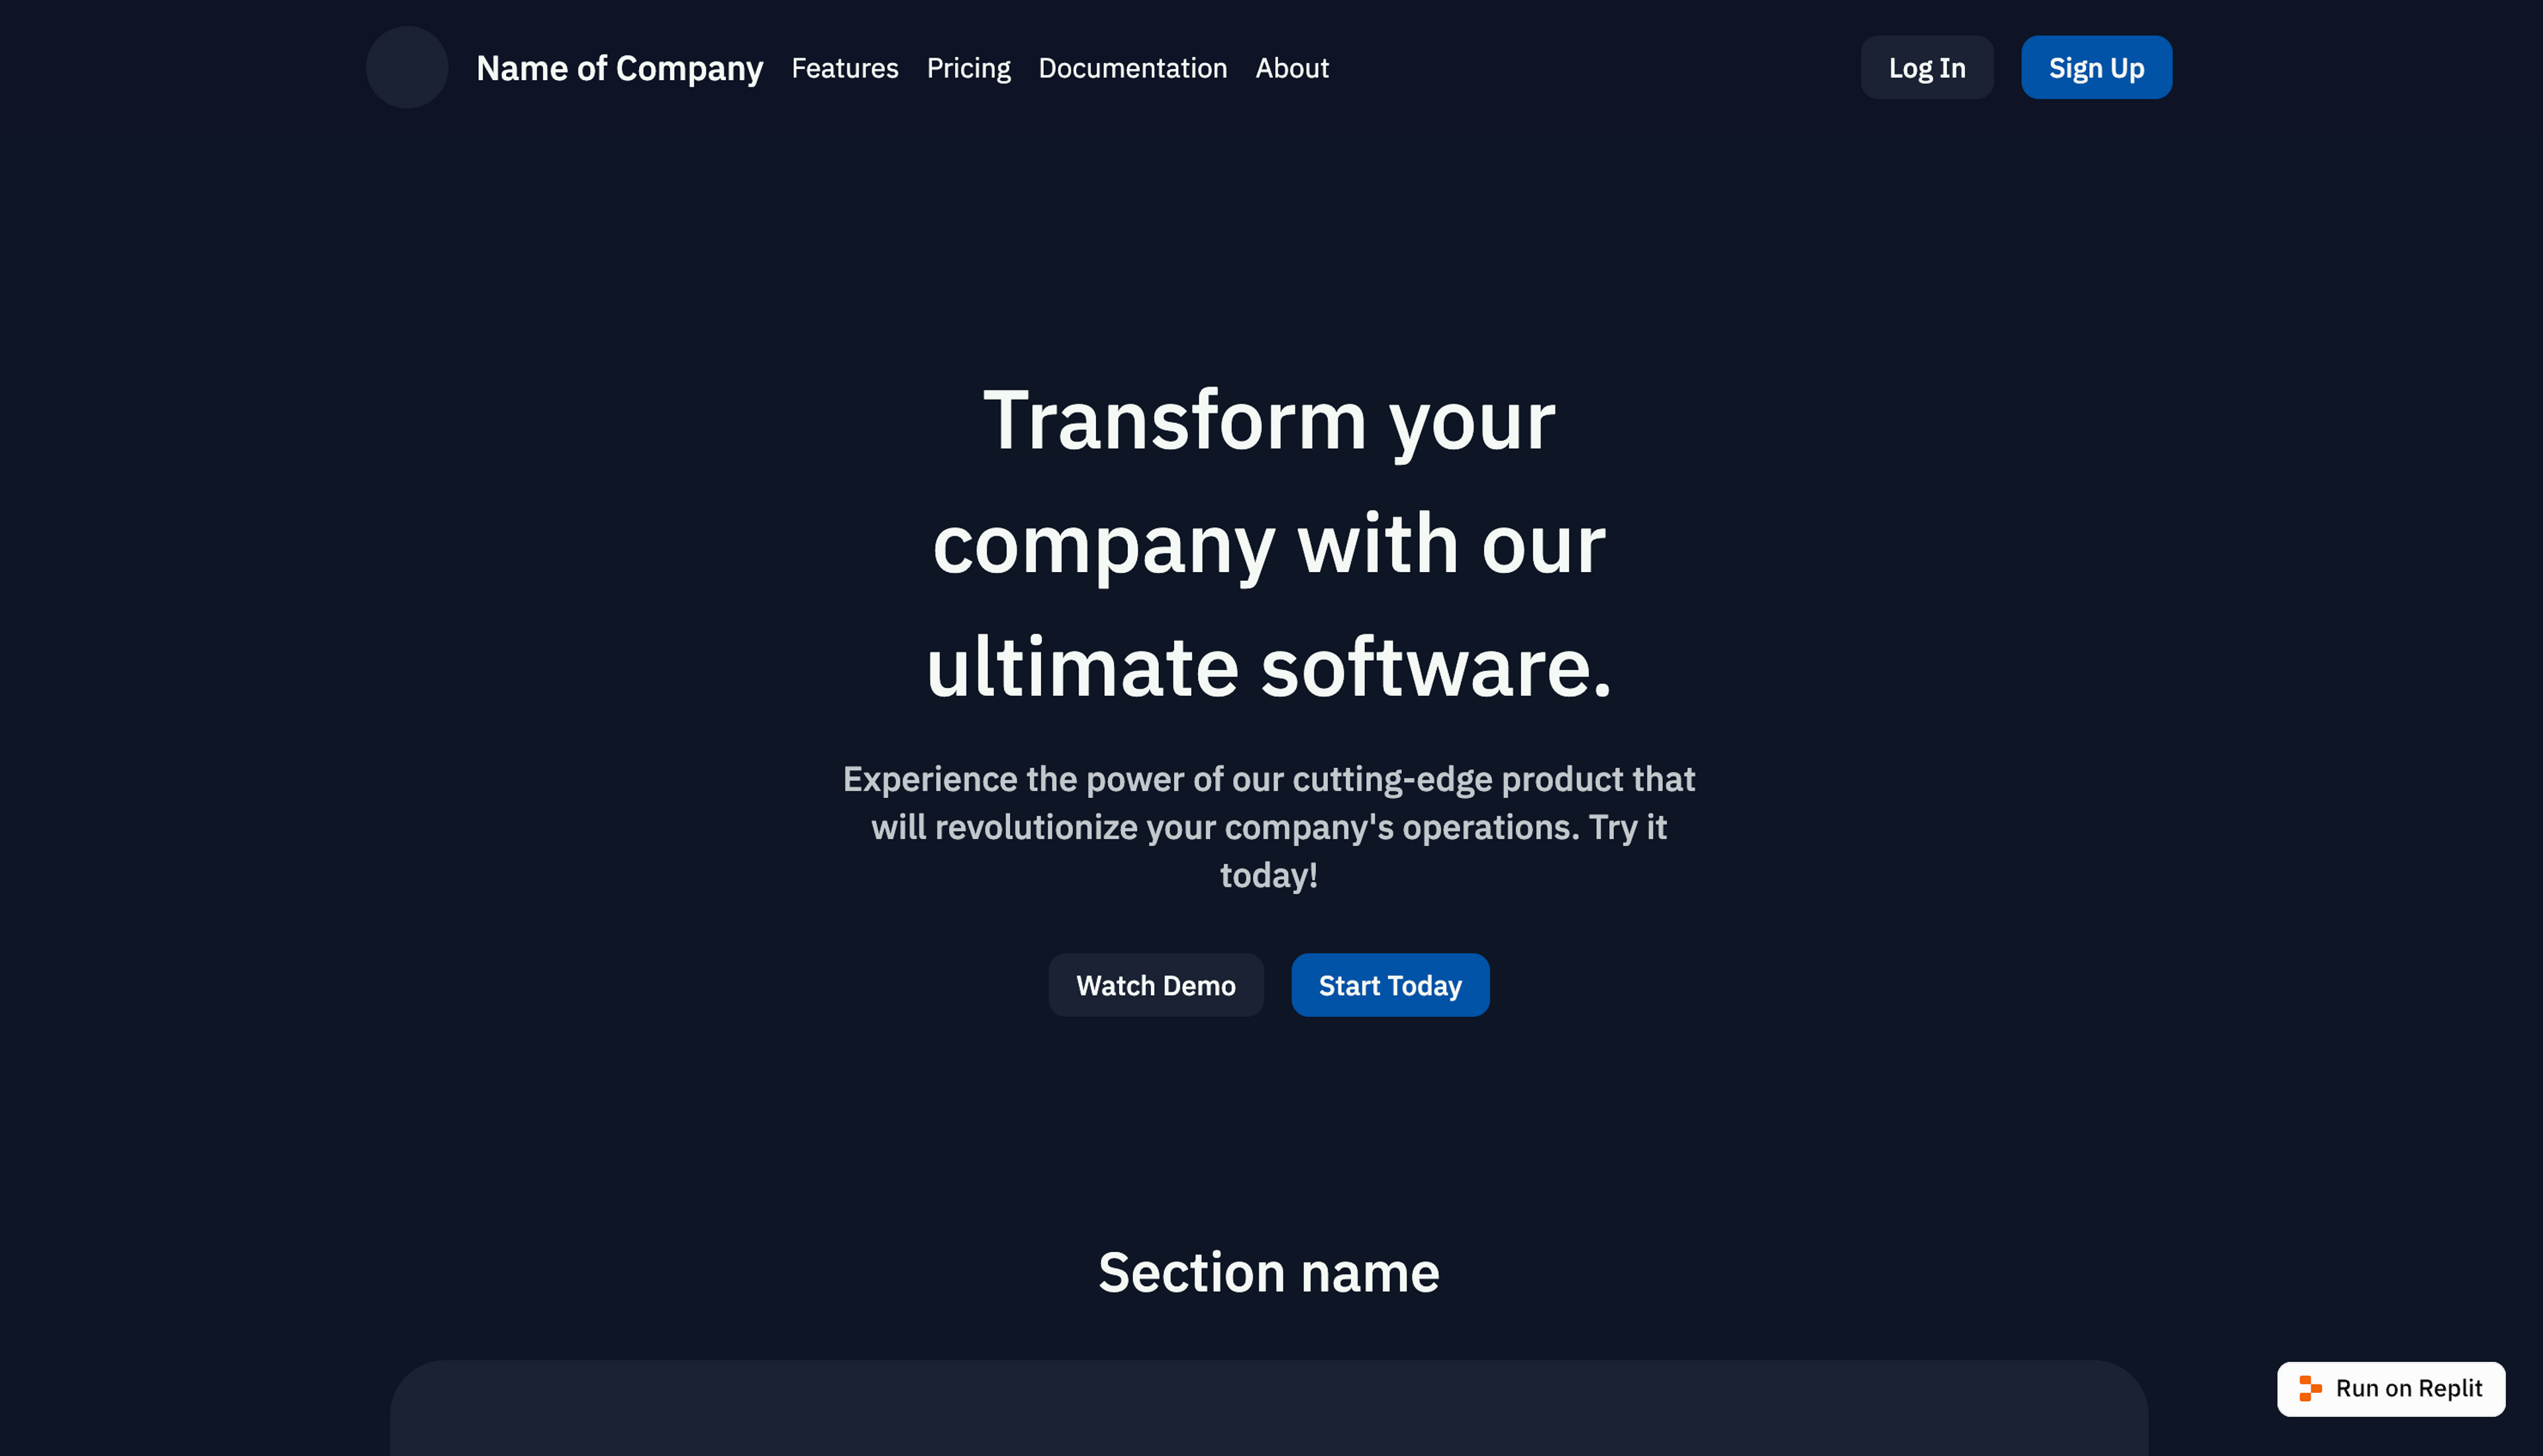 Company website